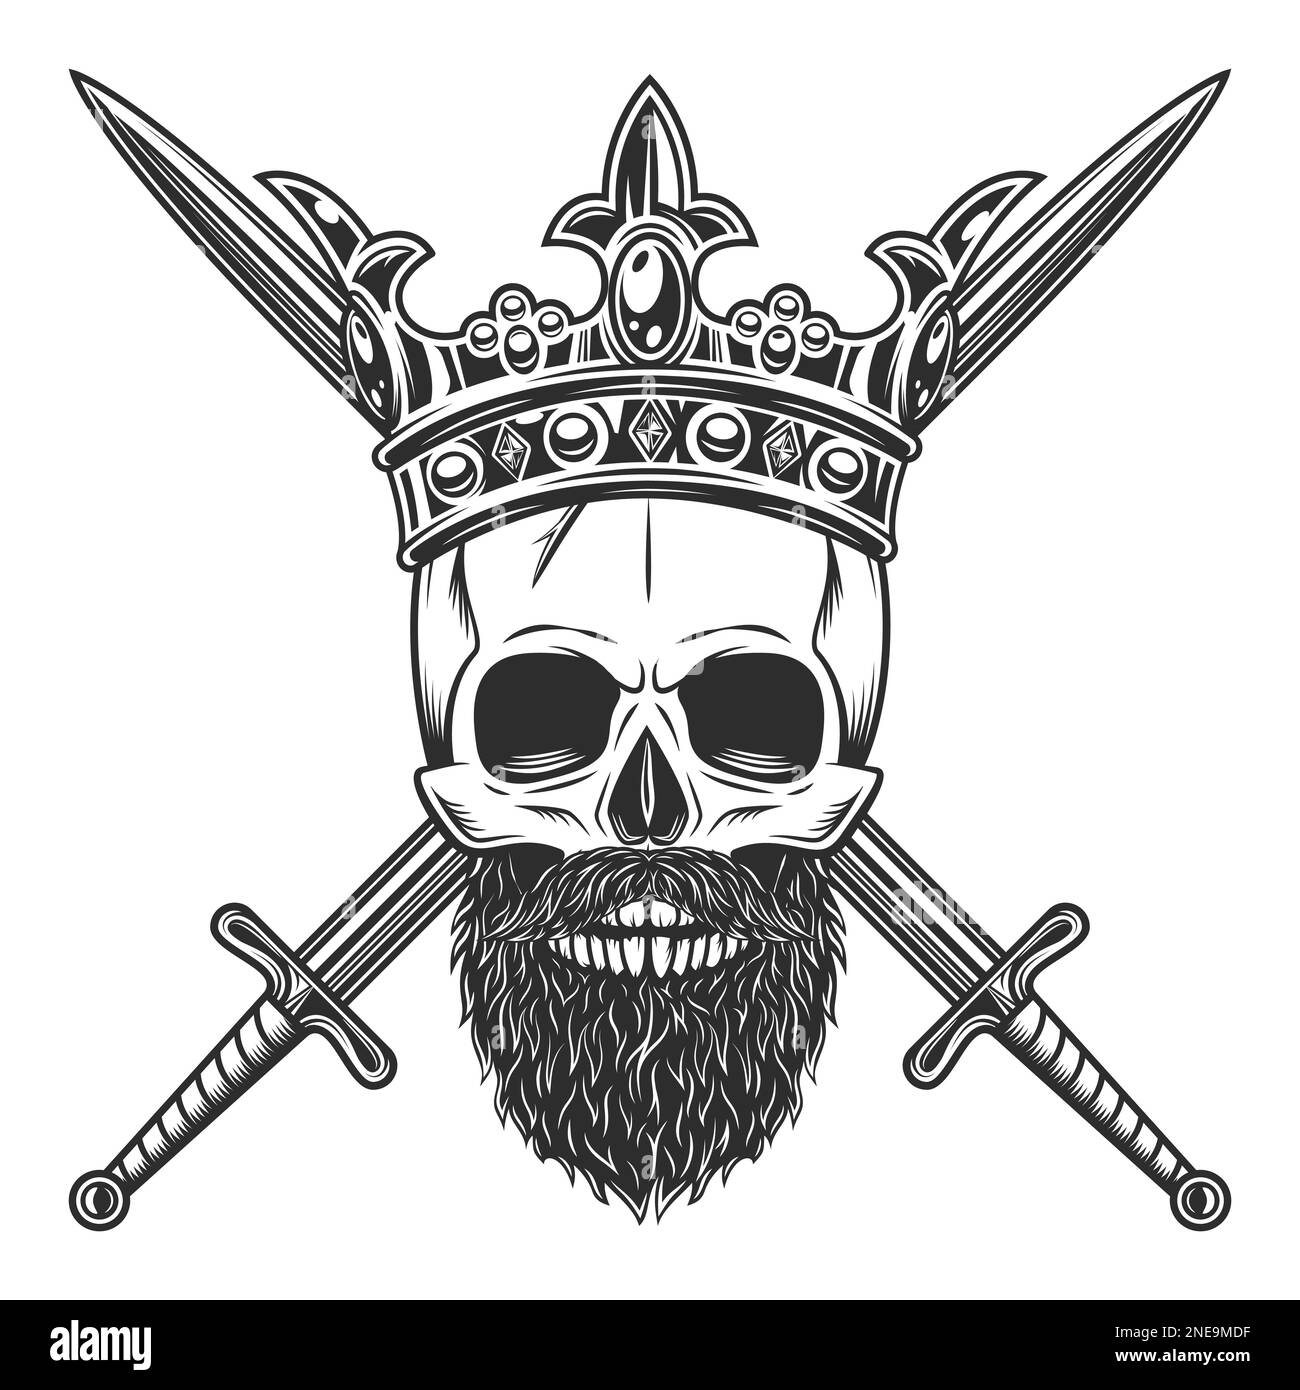 Crâne dans la couronne royale avec moustache et barbe et épée croisée isolé sur fond blanc illustration monochrome Illustration de Vecteur